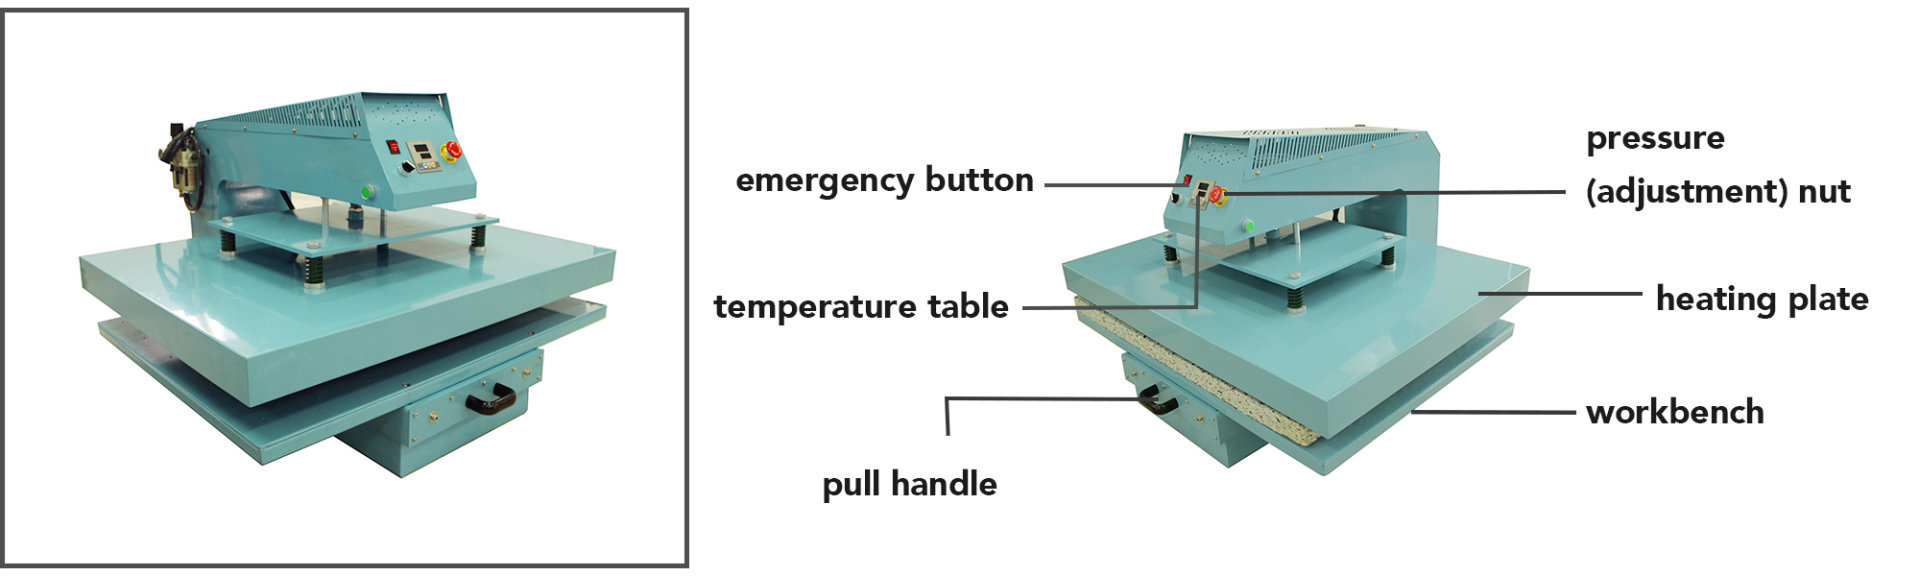 Pneumatic Heat Press Machine Hanrun Paper